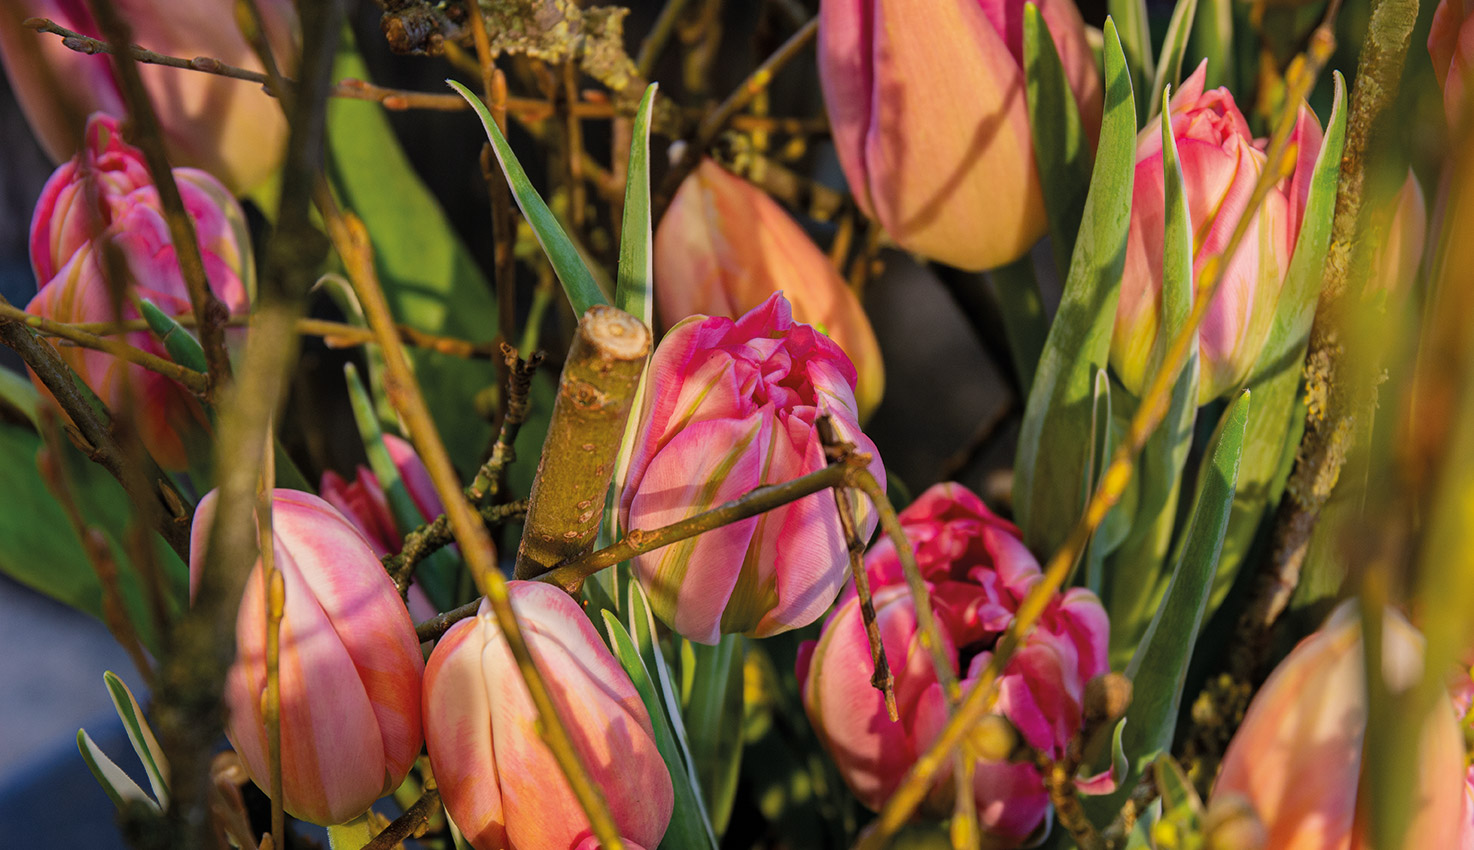 bundel-van-takken-workshop-boeket-maken-van-takken-en-tulpen-combineren-met-voorjaarsbloemen_l1_img_4796